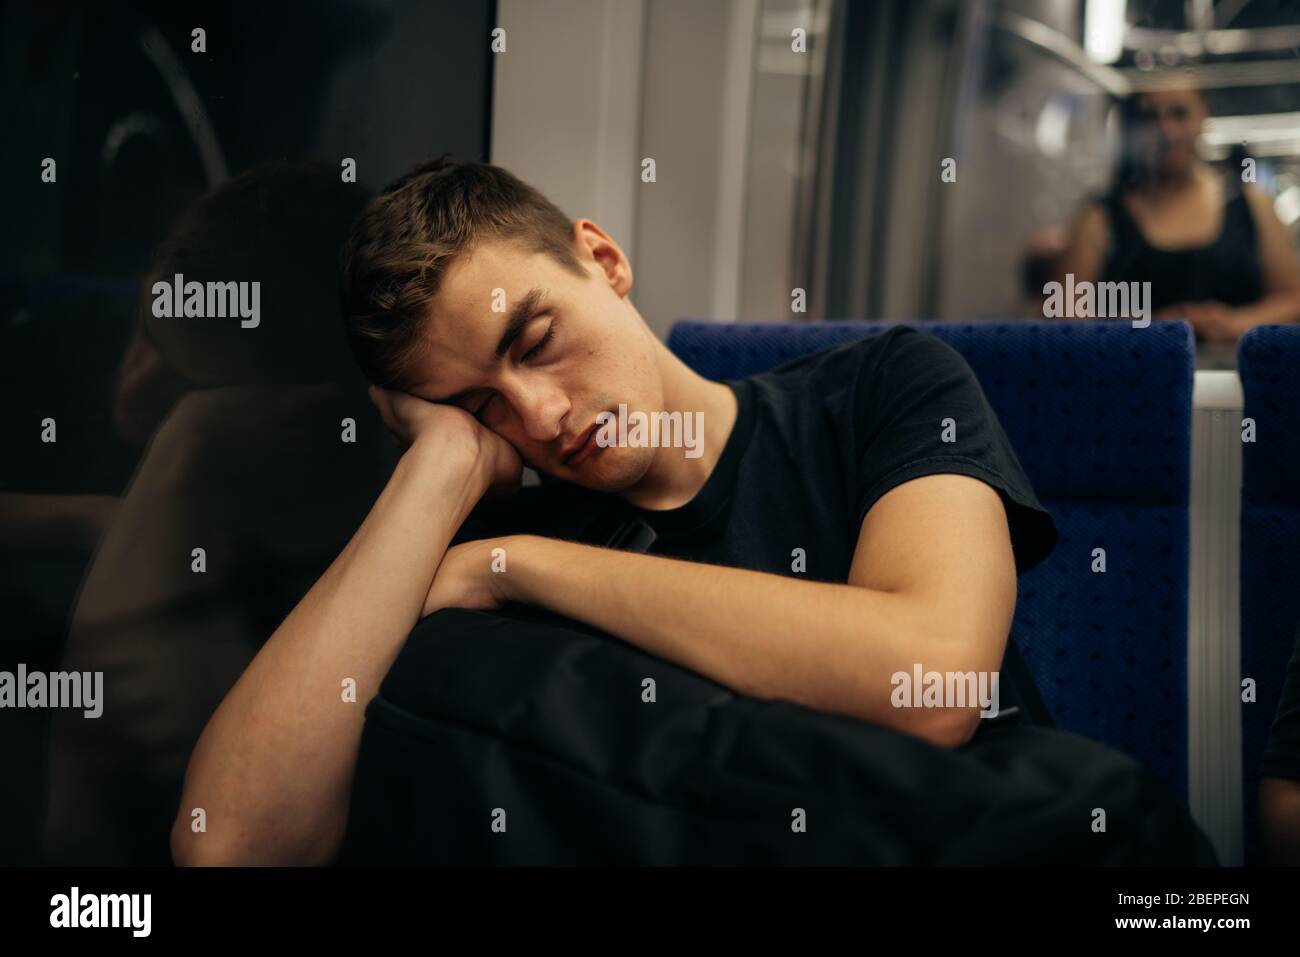 Passagier sitzt auf dem Sitz und schläft in einem Zug / Bus während der Reise.müde erschöpft aussehenden jungen Mann immer weg mit der Zugfahrt. Stockfoto